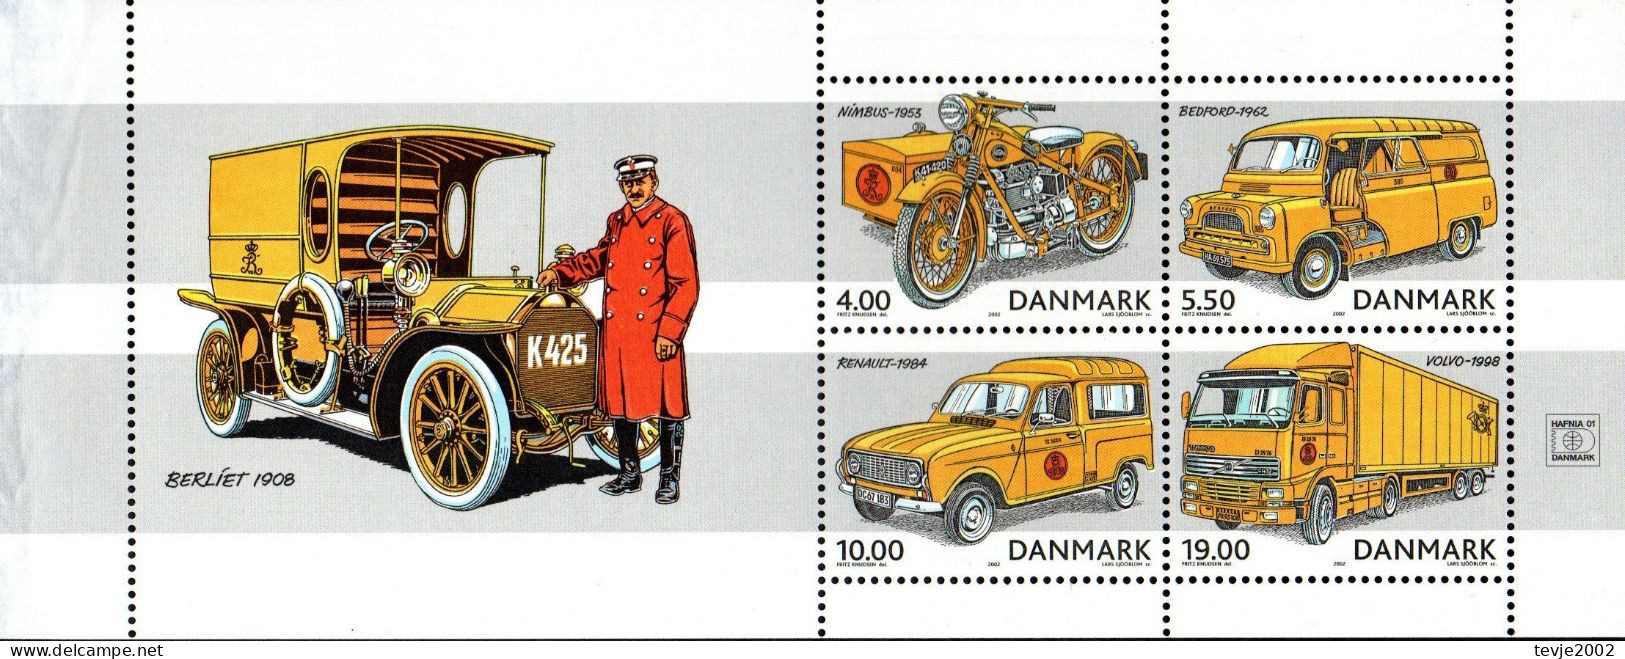 Dänemark 2002 - Mi.Nr. 1312 - 1315 (aus Markenheftchen) - Postfrisch MNH - Post - Neufs